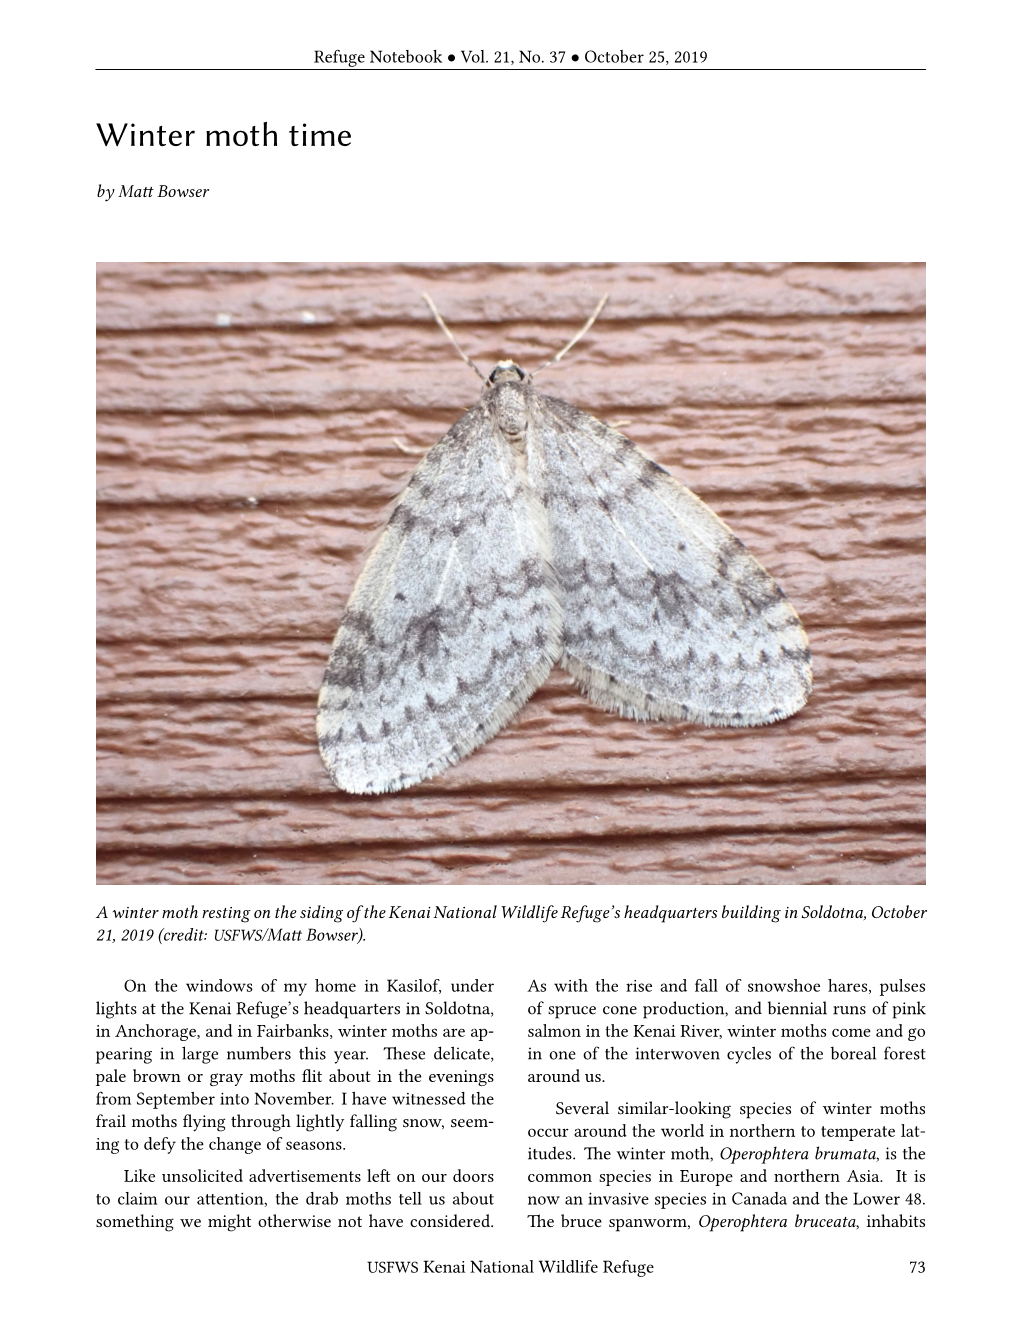 Winter Moth Time by Matt Bowser